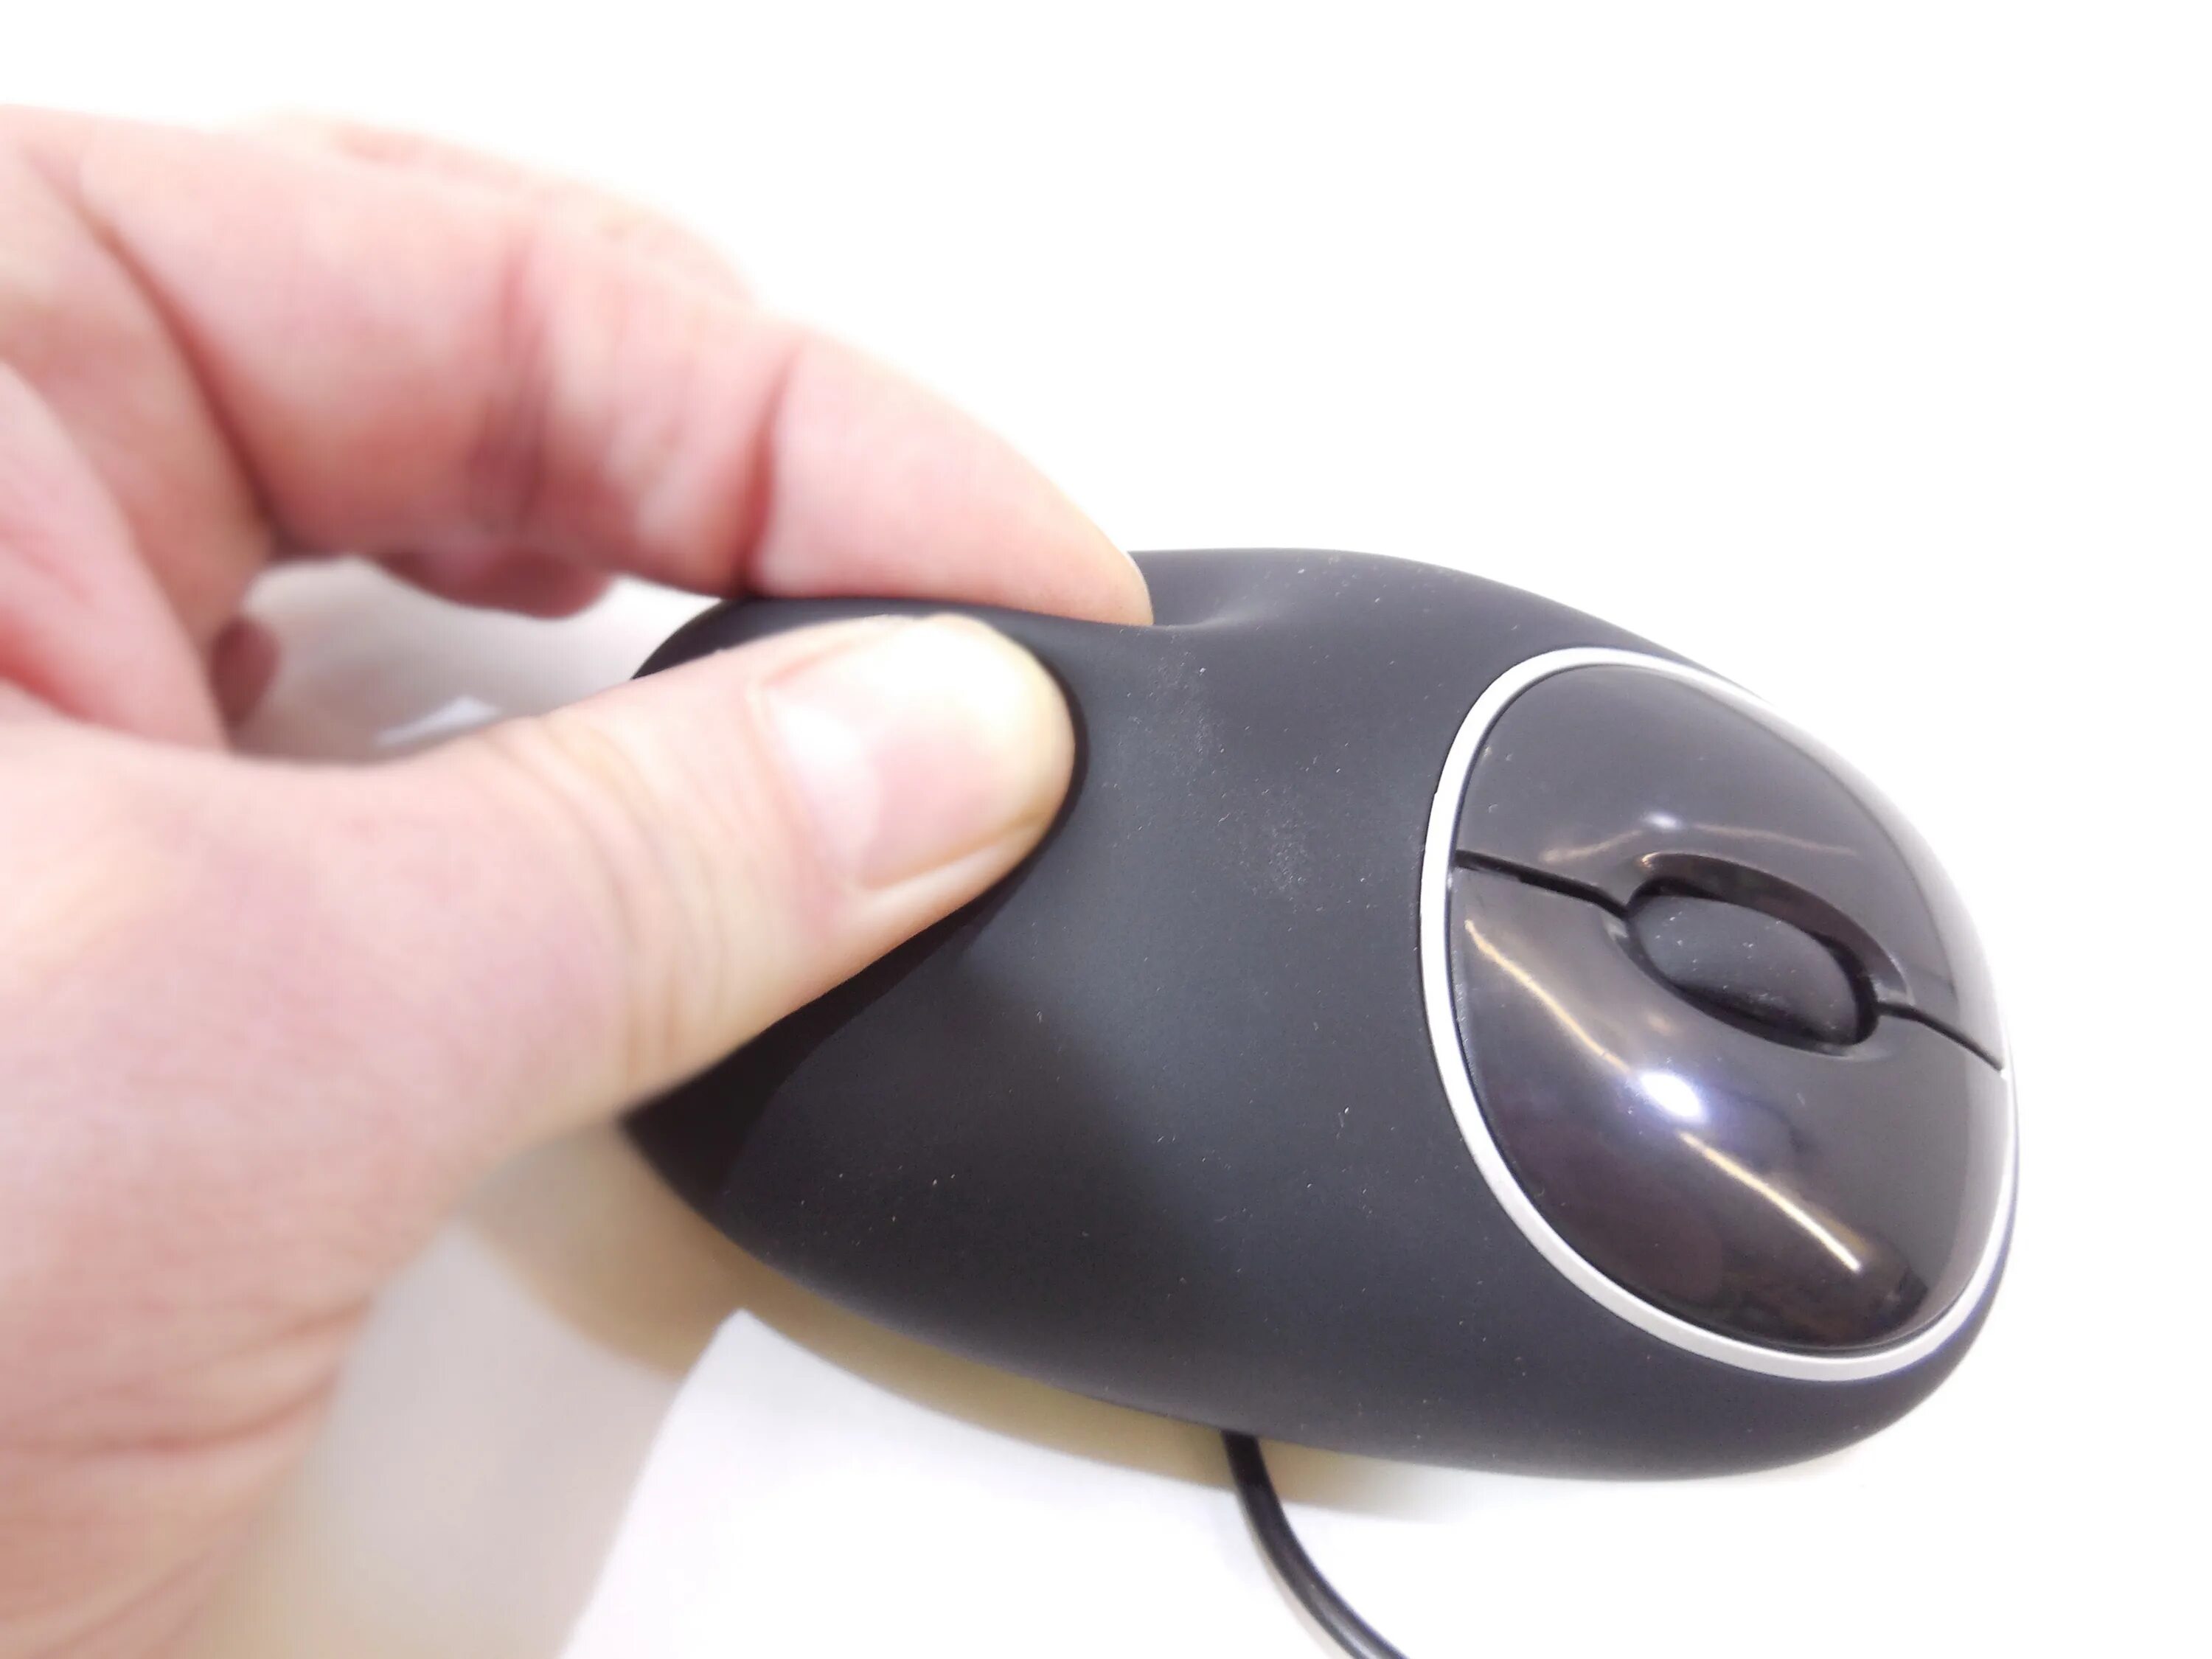 Usb мышь купить. Мышка антистресс компьютерная ДНС. Мышка компьютерная антистресс Sven. Ata2388 мышка USB. Мышка прорезиненная.